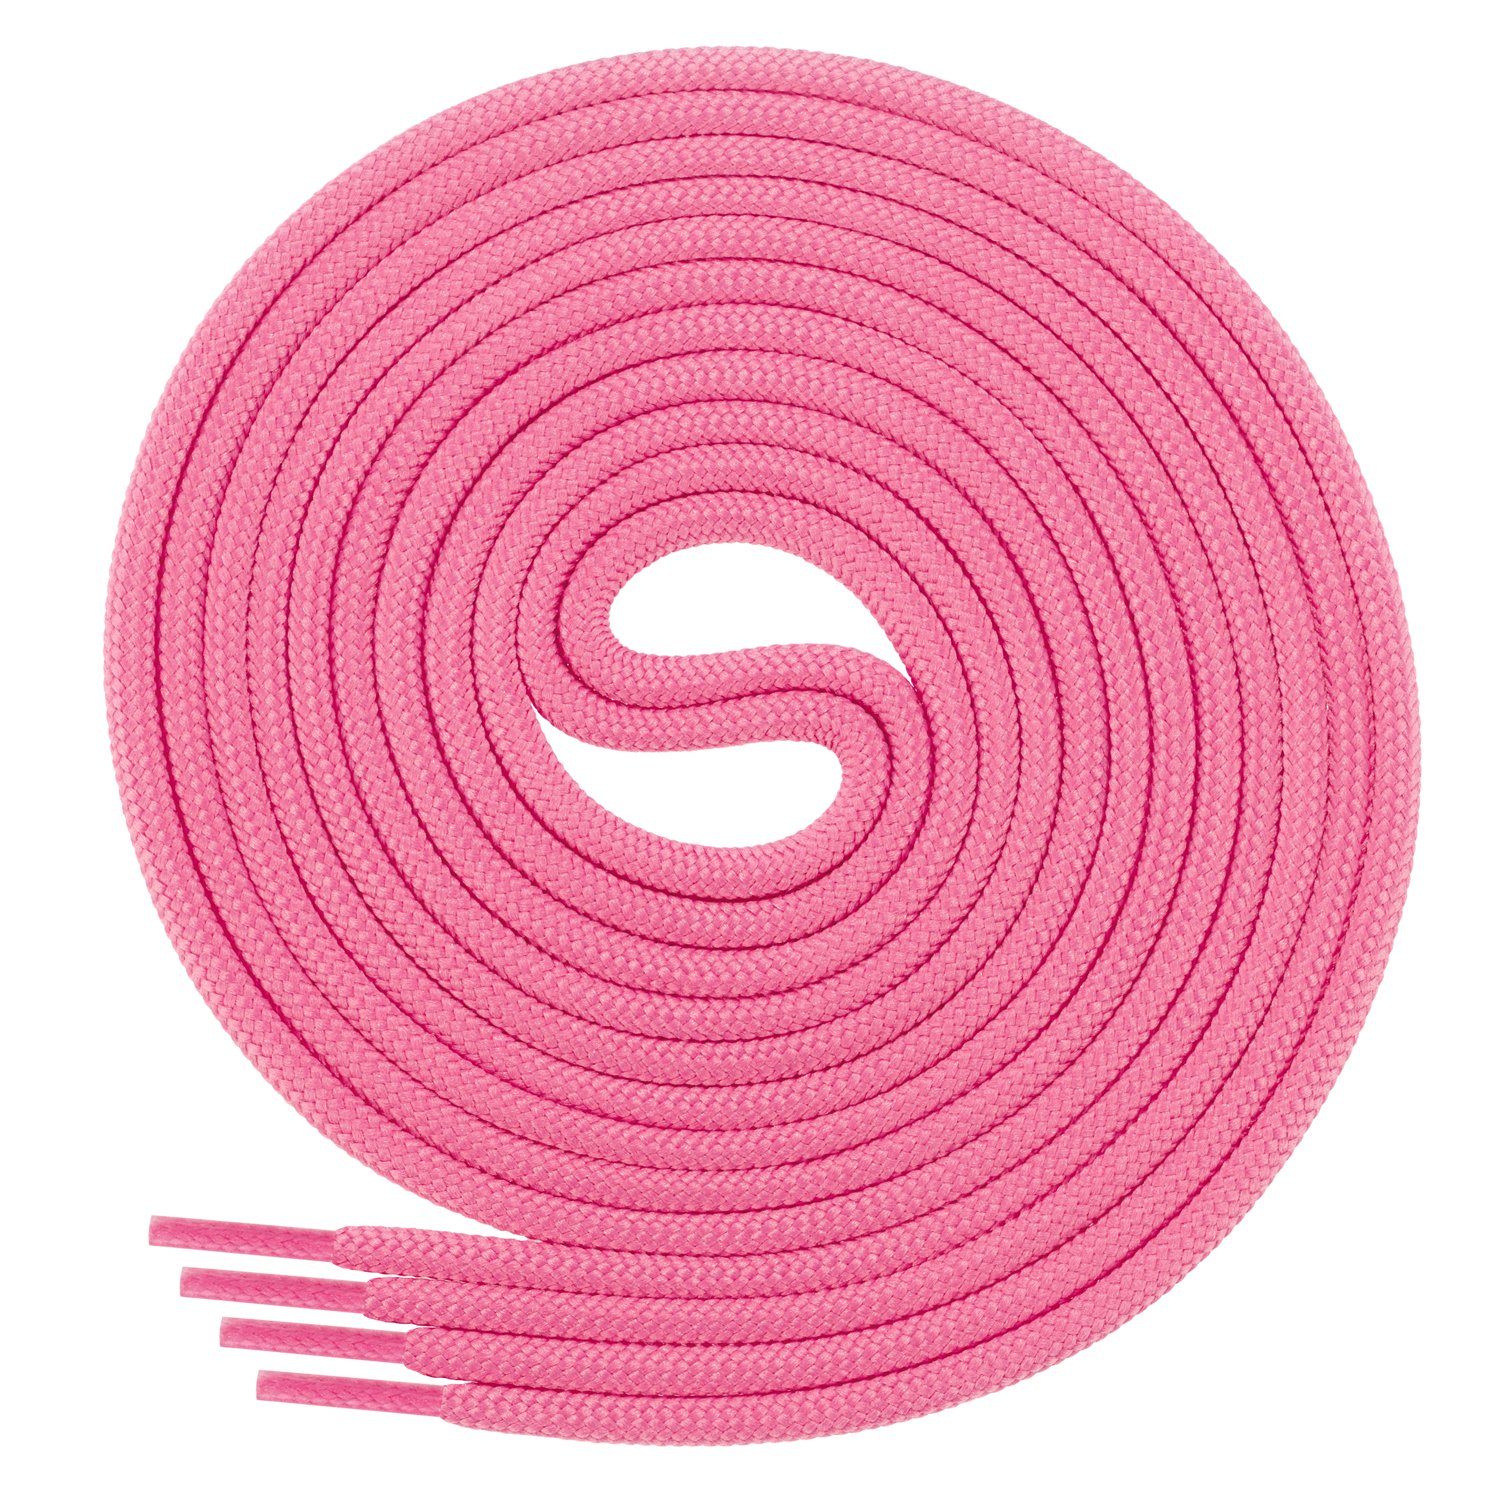 Di Ficchiano Schnürsenkel 1Paar runde Schnürsenkel ø 3mm für Business- und Lederschuhe, reißfest Pink